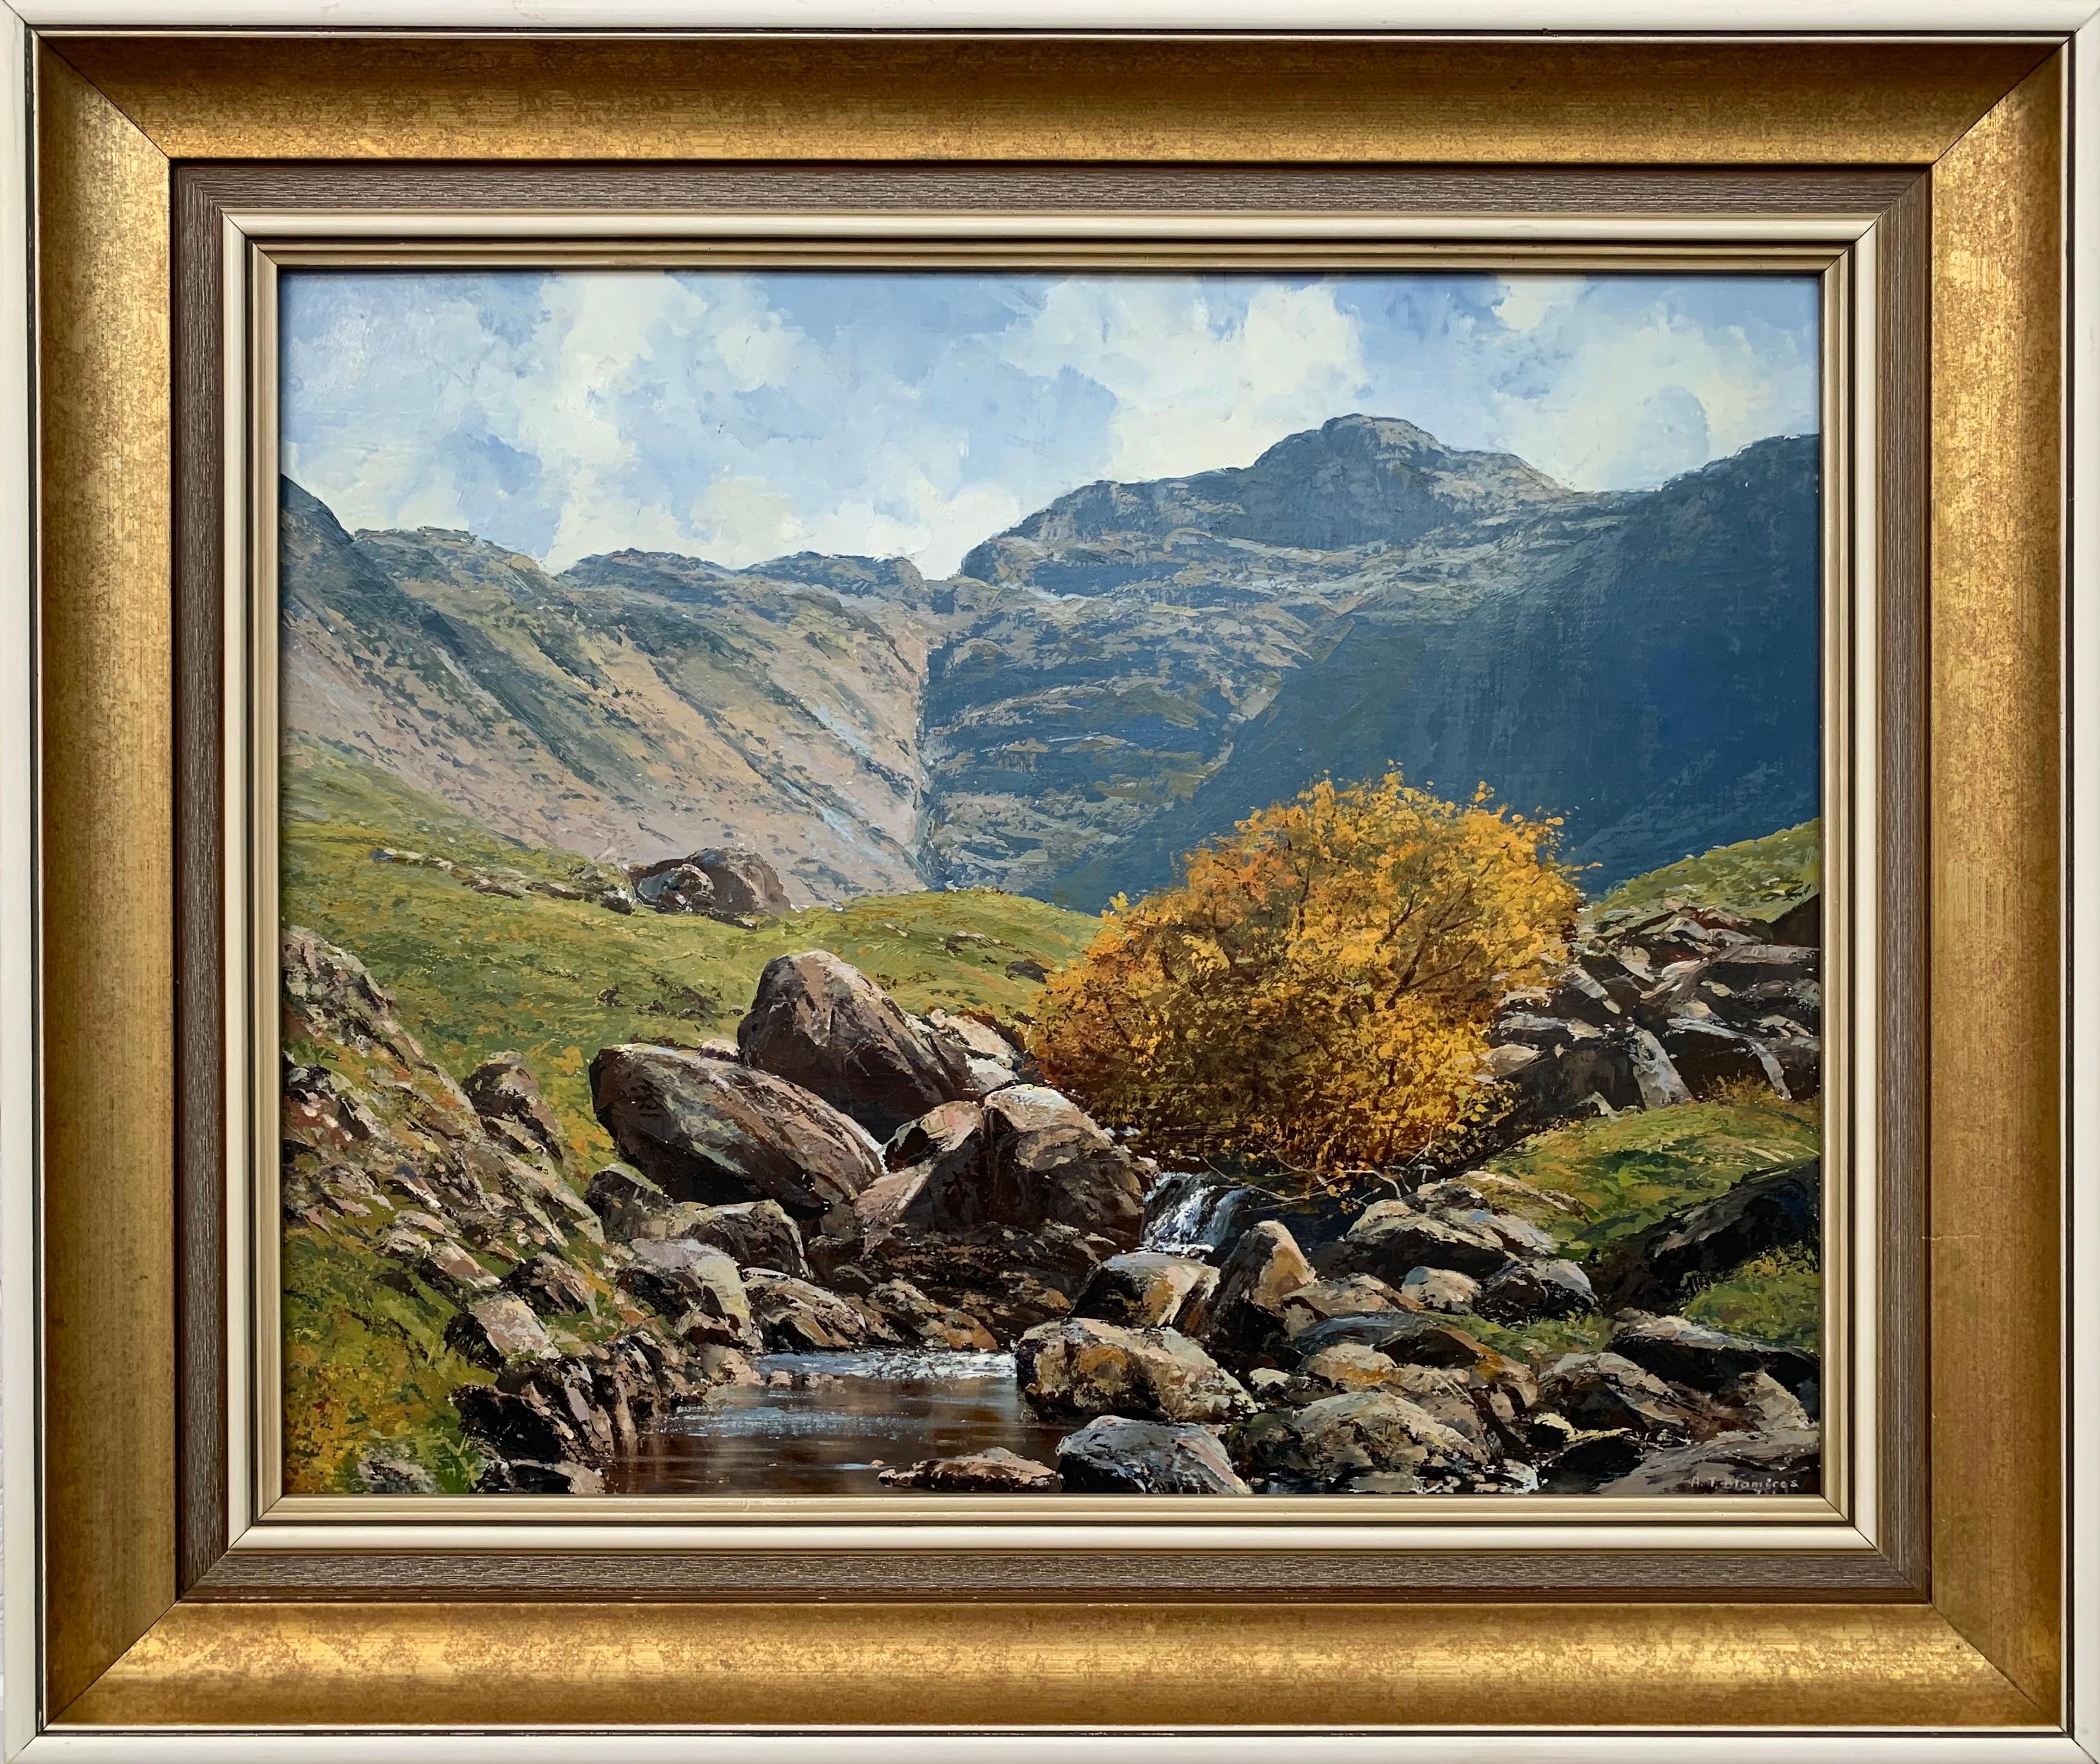 Landscape Art Arthur Terry Blamires - Peinture à l'huile de la région des lacs anglais par un artiste paysagiste Modern British